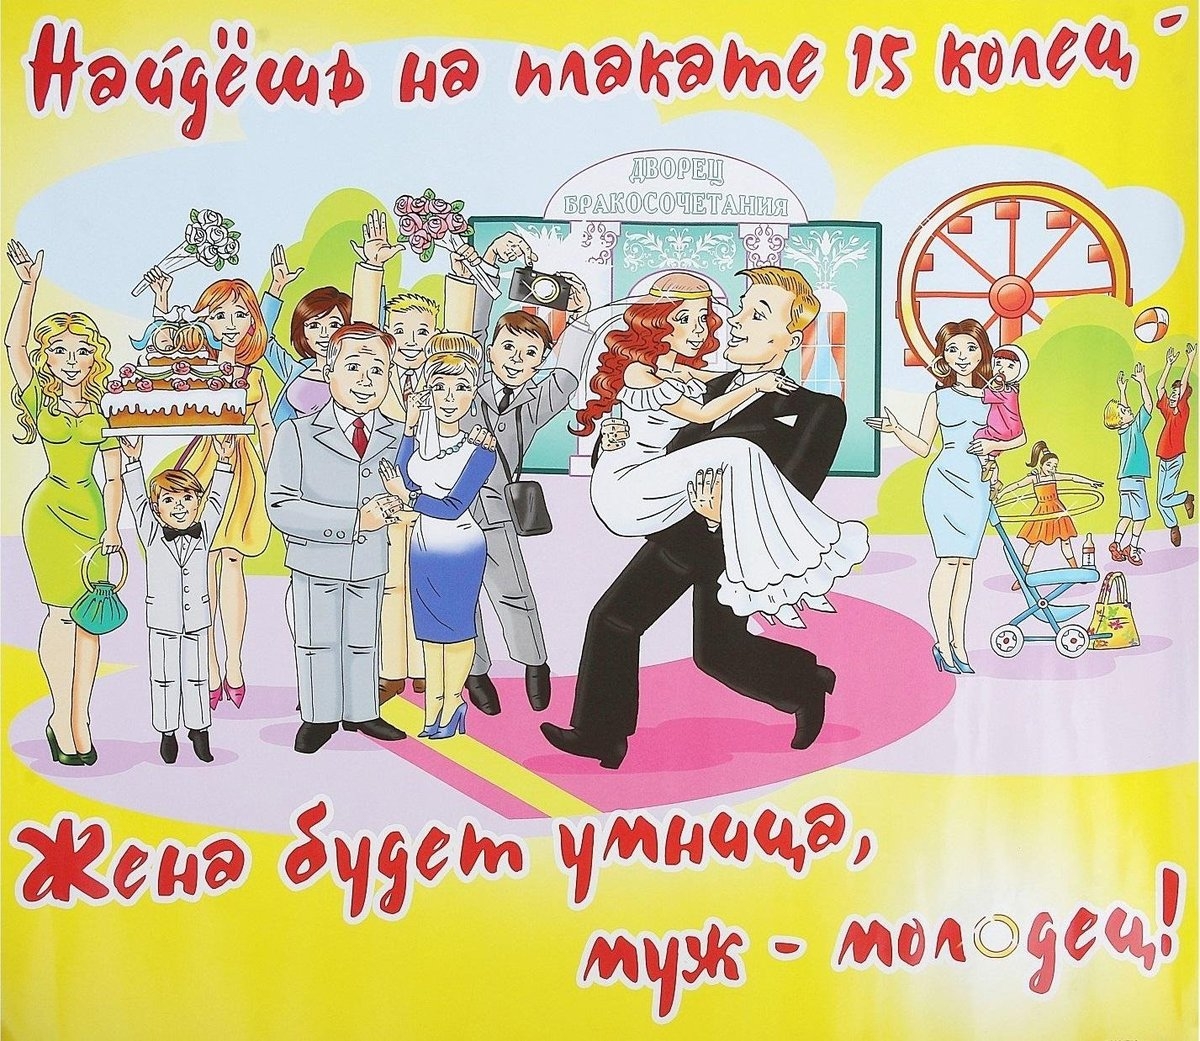 Свадебные плакаты для выкупа невесты – как сделать их своими руками